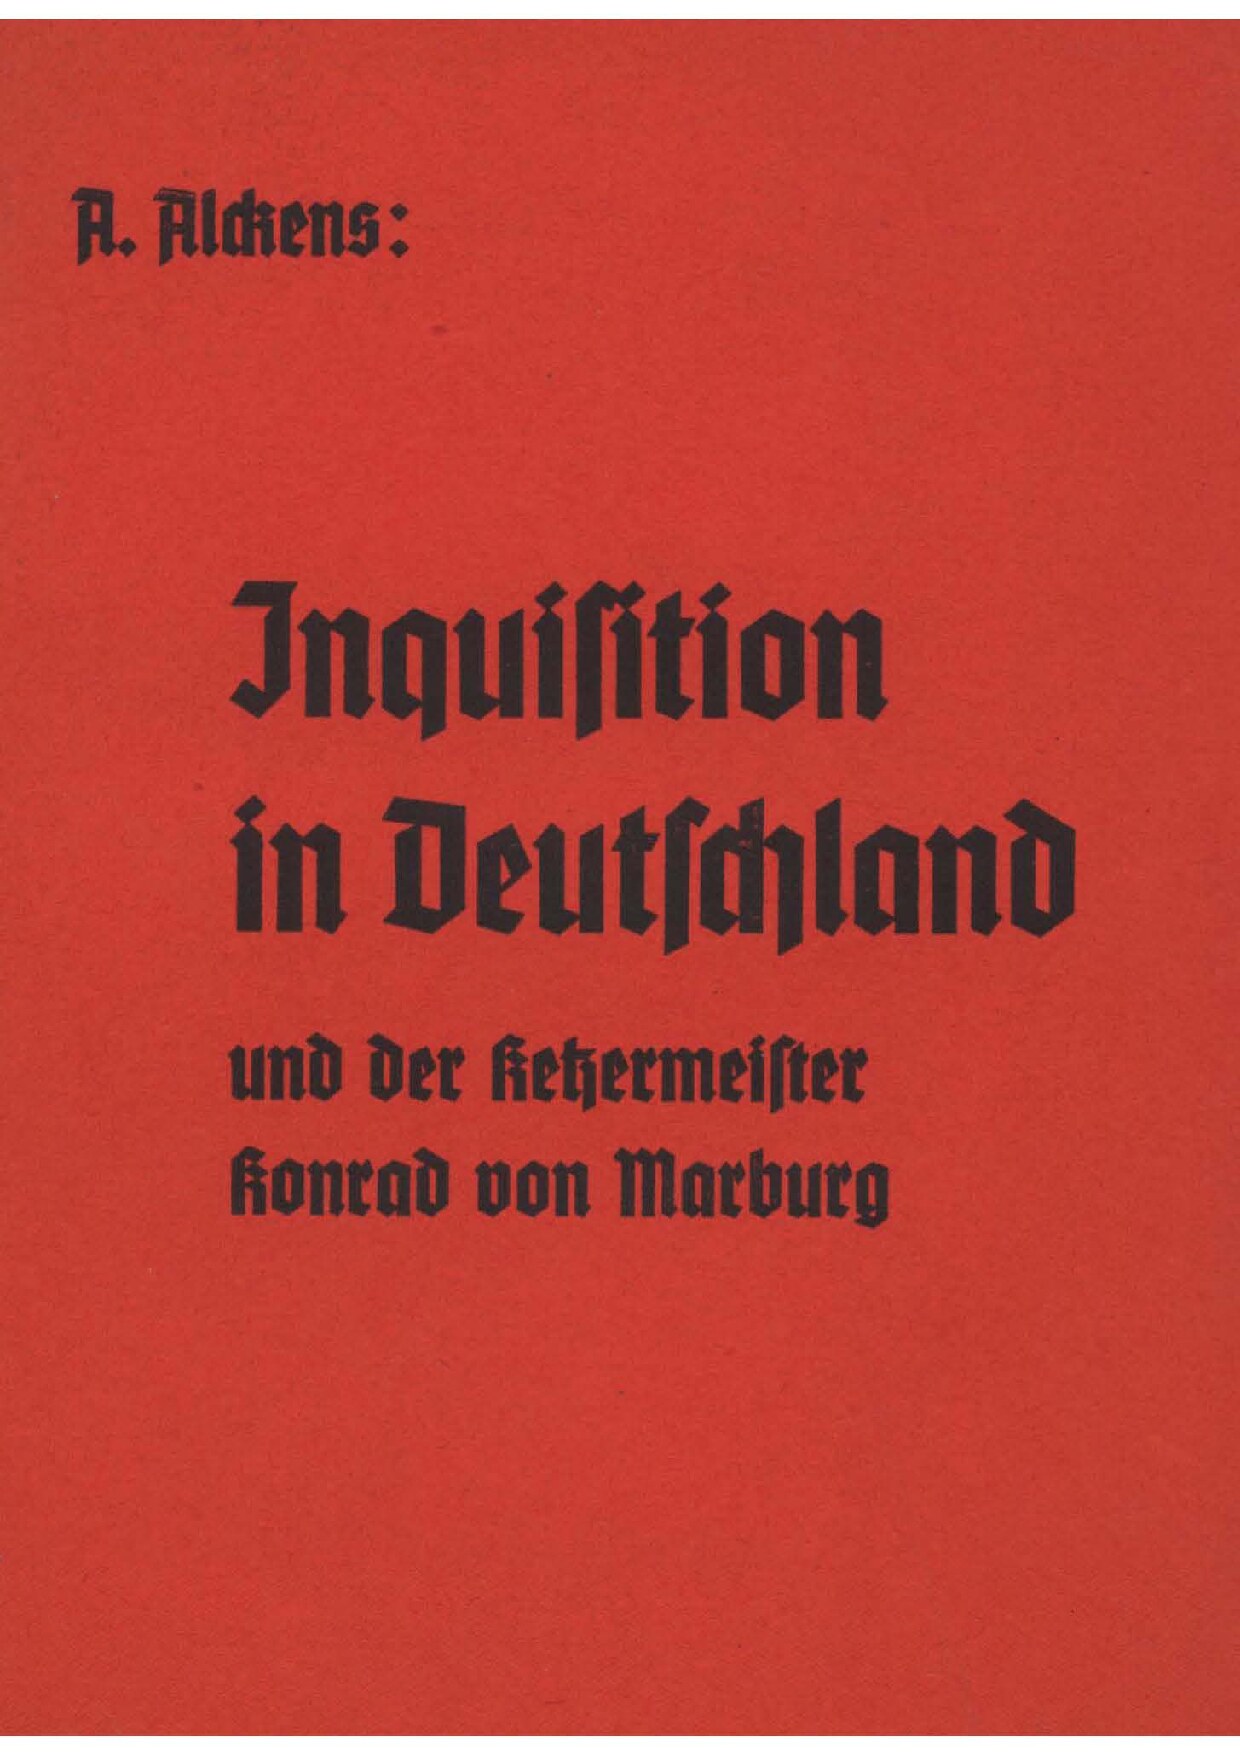 Inquisition in Deutschland und der Ketzermeister Konrad von Marburg